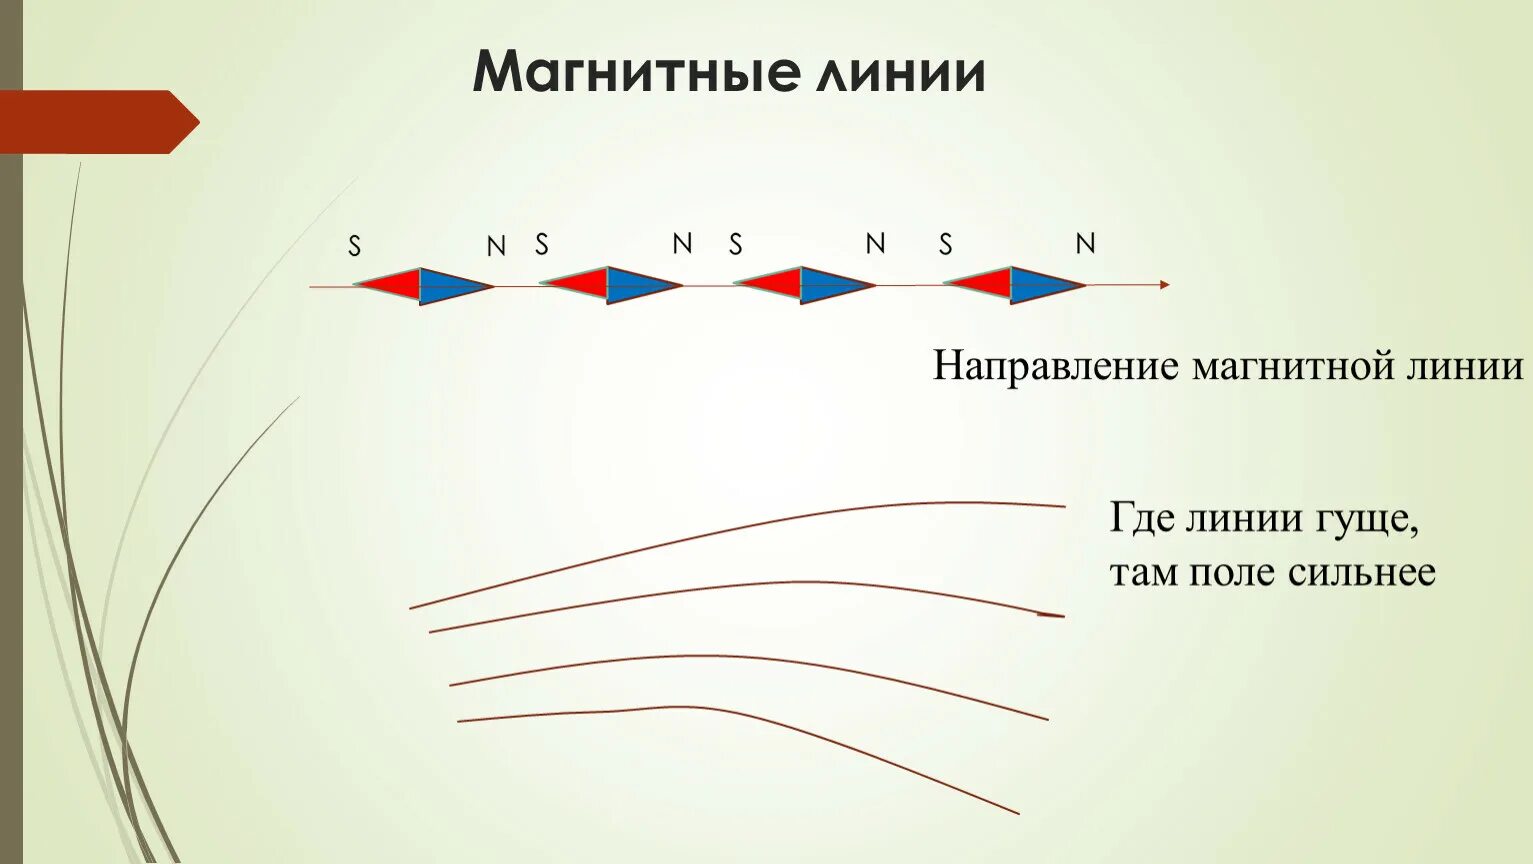 Направление магнитной линии рисунок. Магнитные линии. Магнит линии. Магнитные линии имеют направление. Особенности магнитных линий.